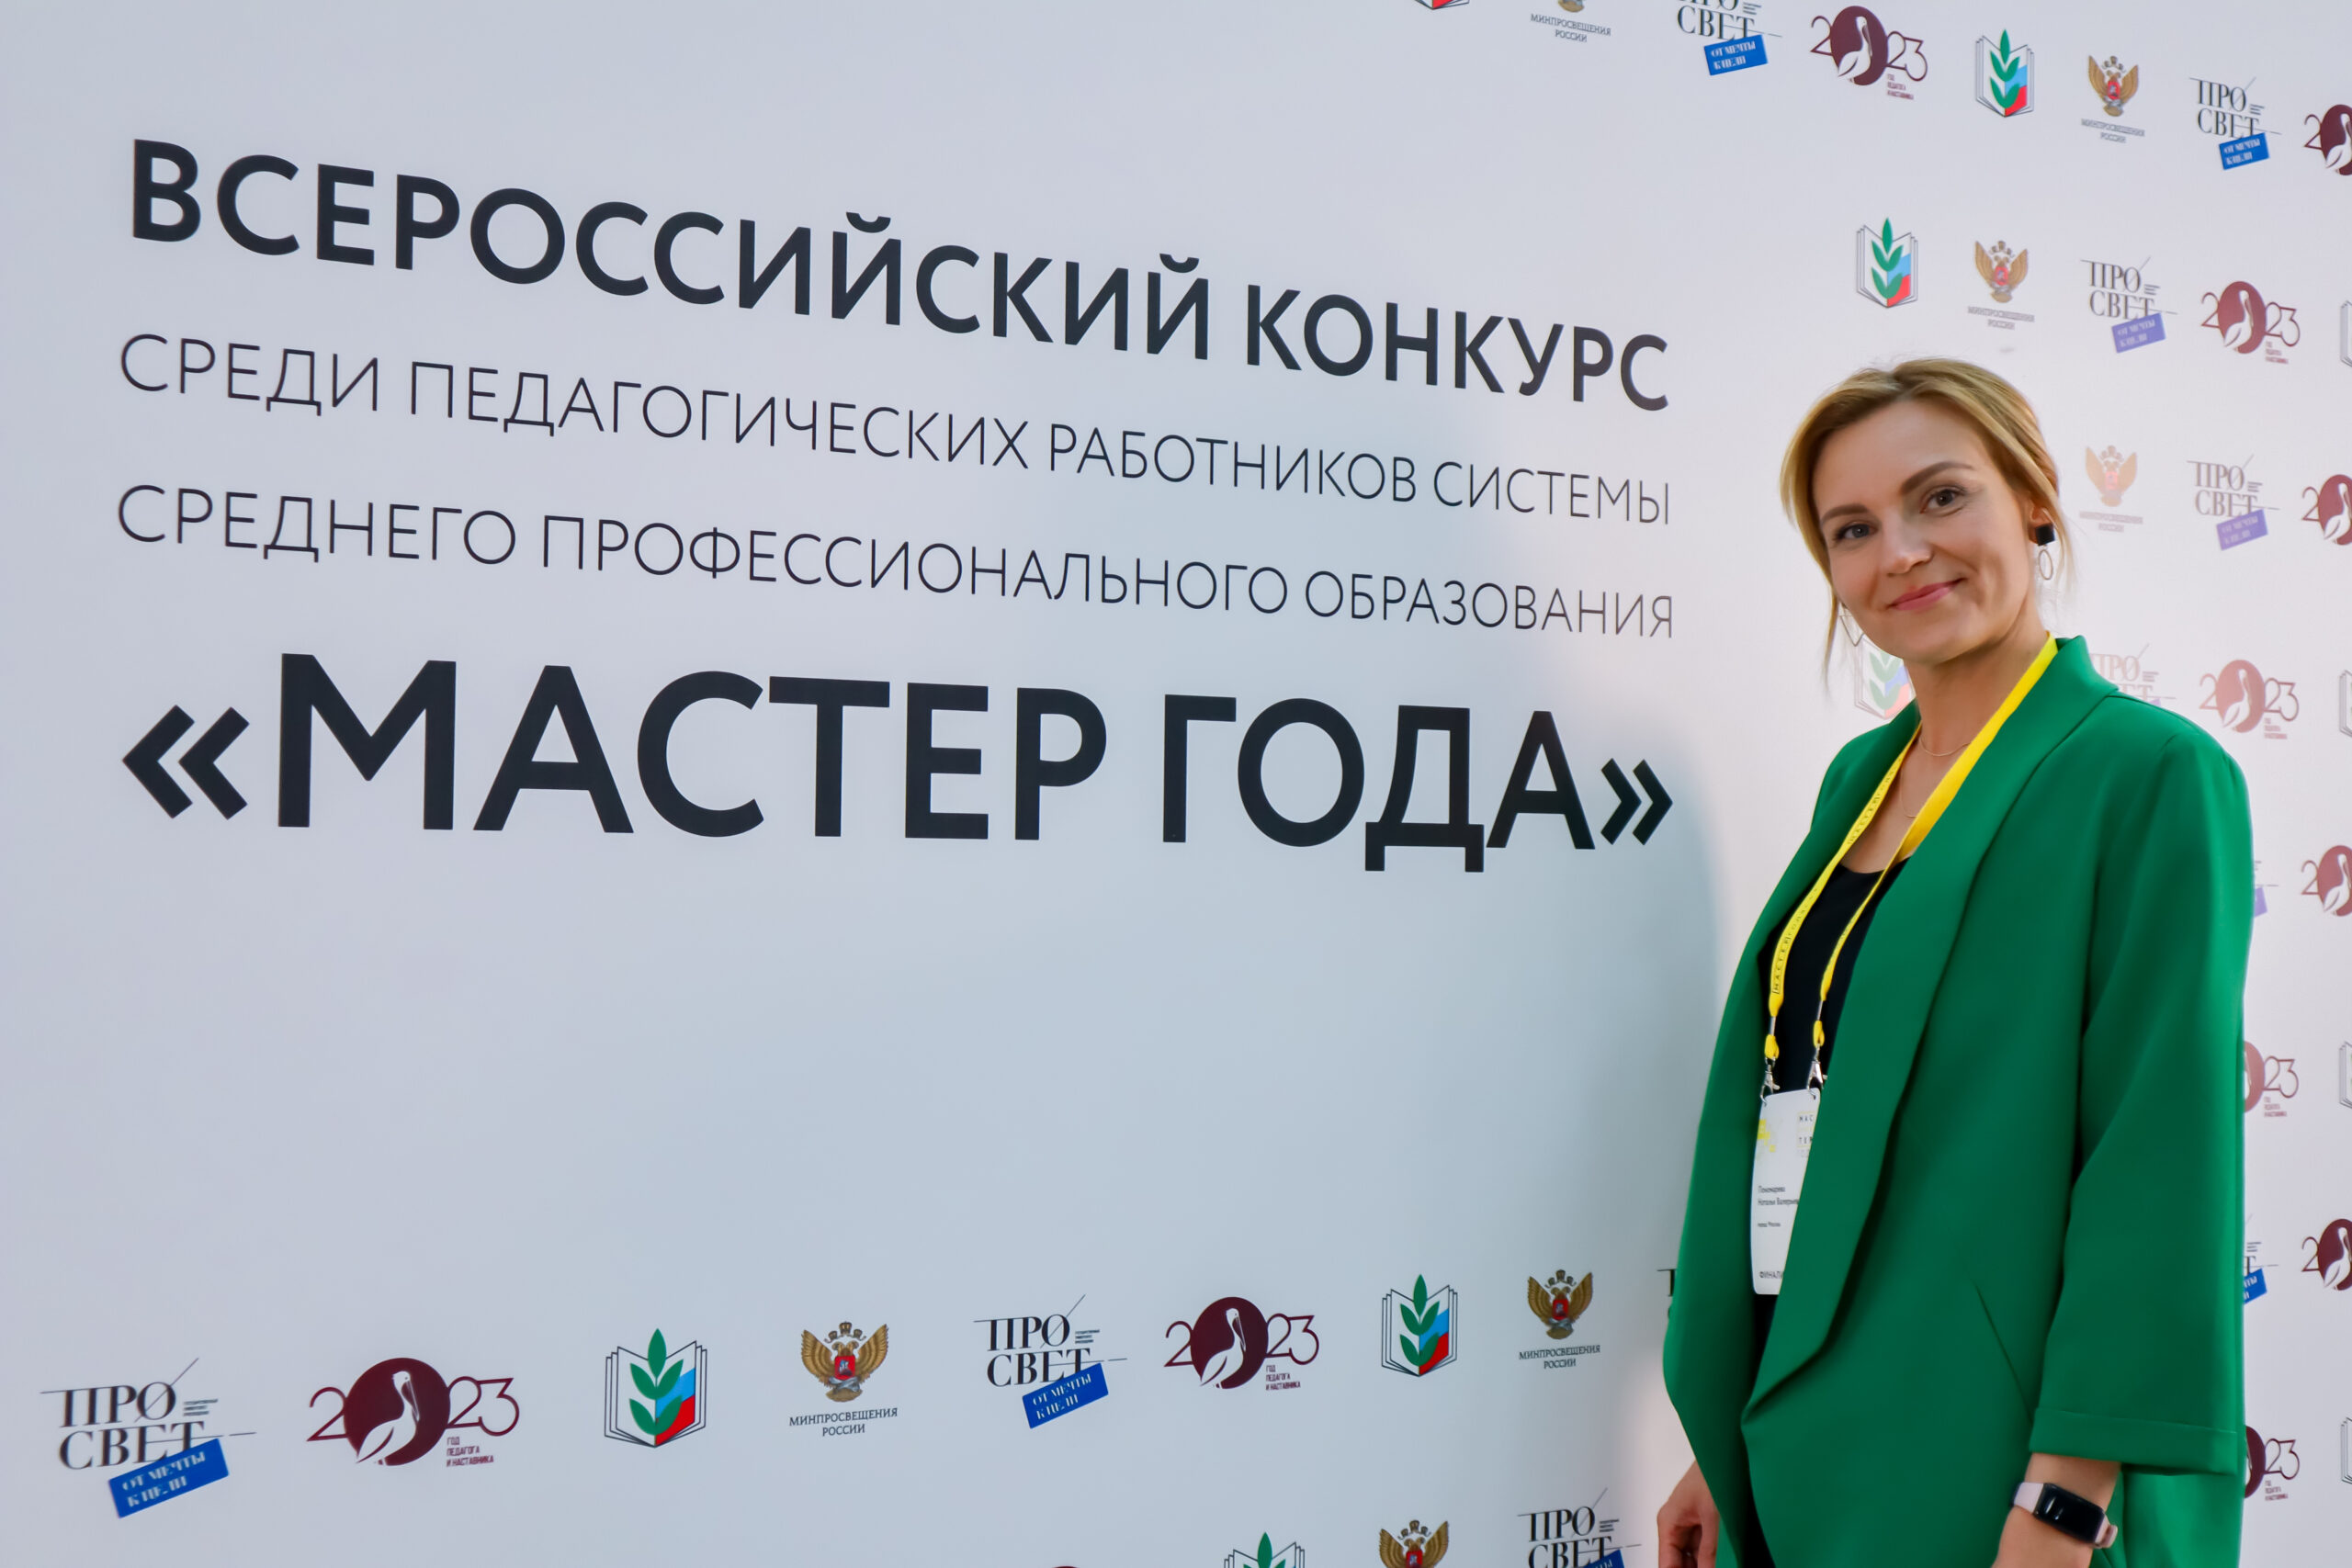 Преподавателей московских колледжей приглашают принять участие во Всероссийском конкурсе «Мастер года»